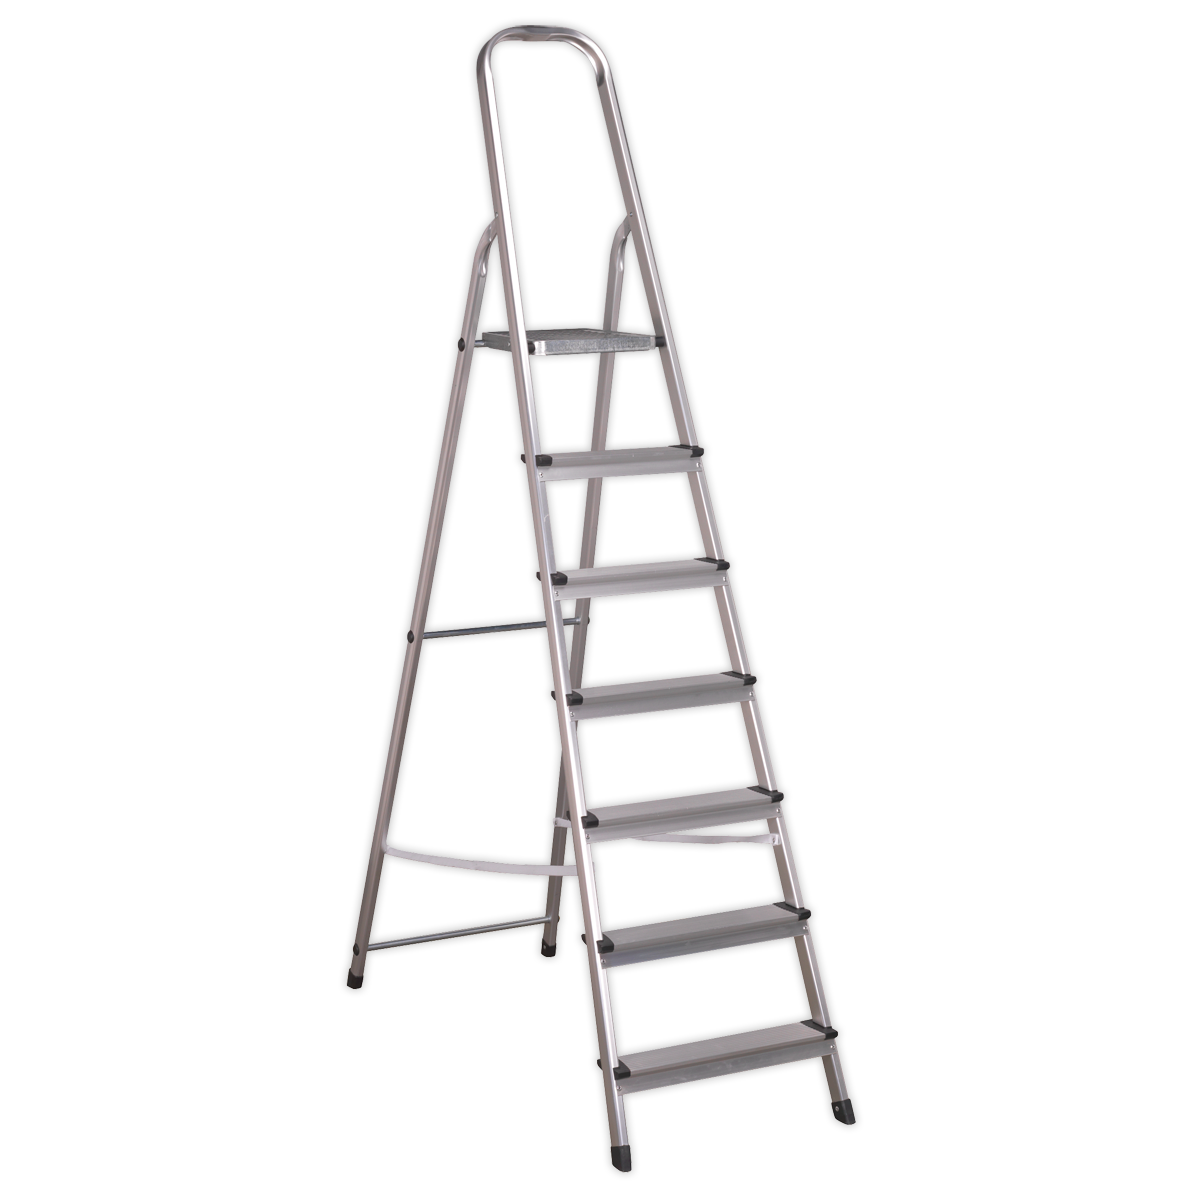 Sealey Aluminium Step Ladder 7-Tread EN 131